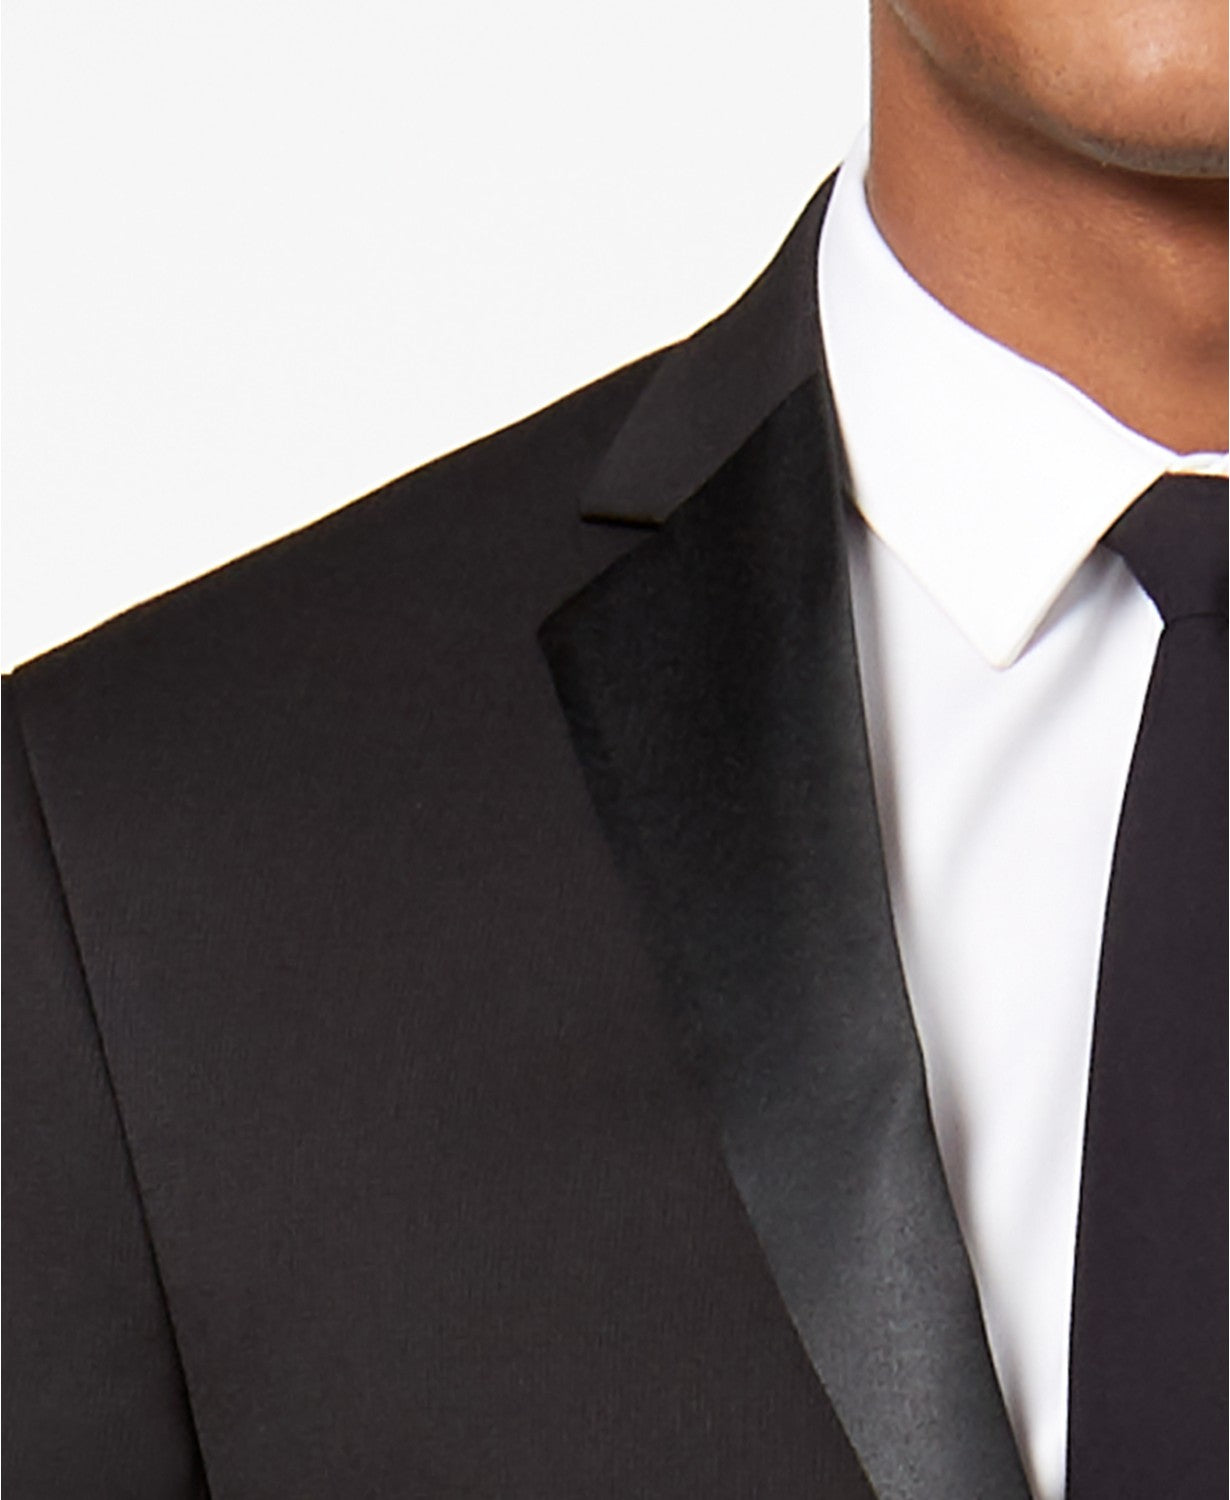 Kenneth Cole Mens Tuxedo Suit 36S / 29 x 32 Flex Slim-Fit Black Notch Lapel